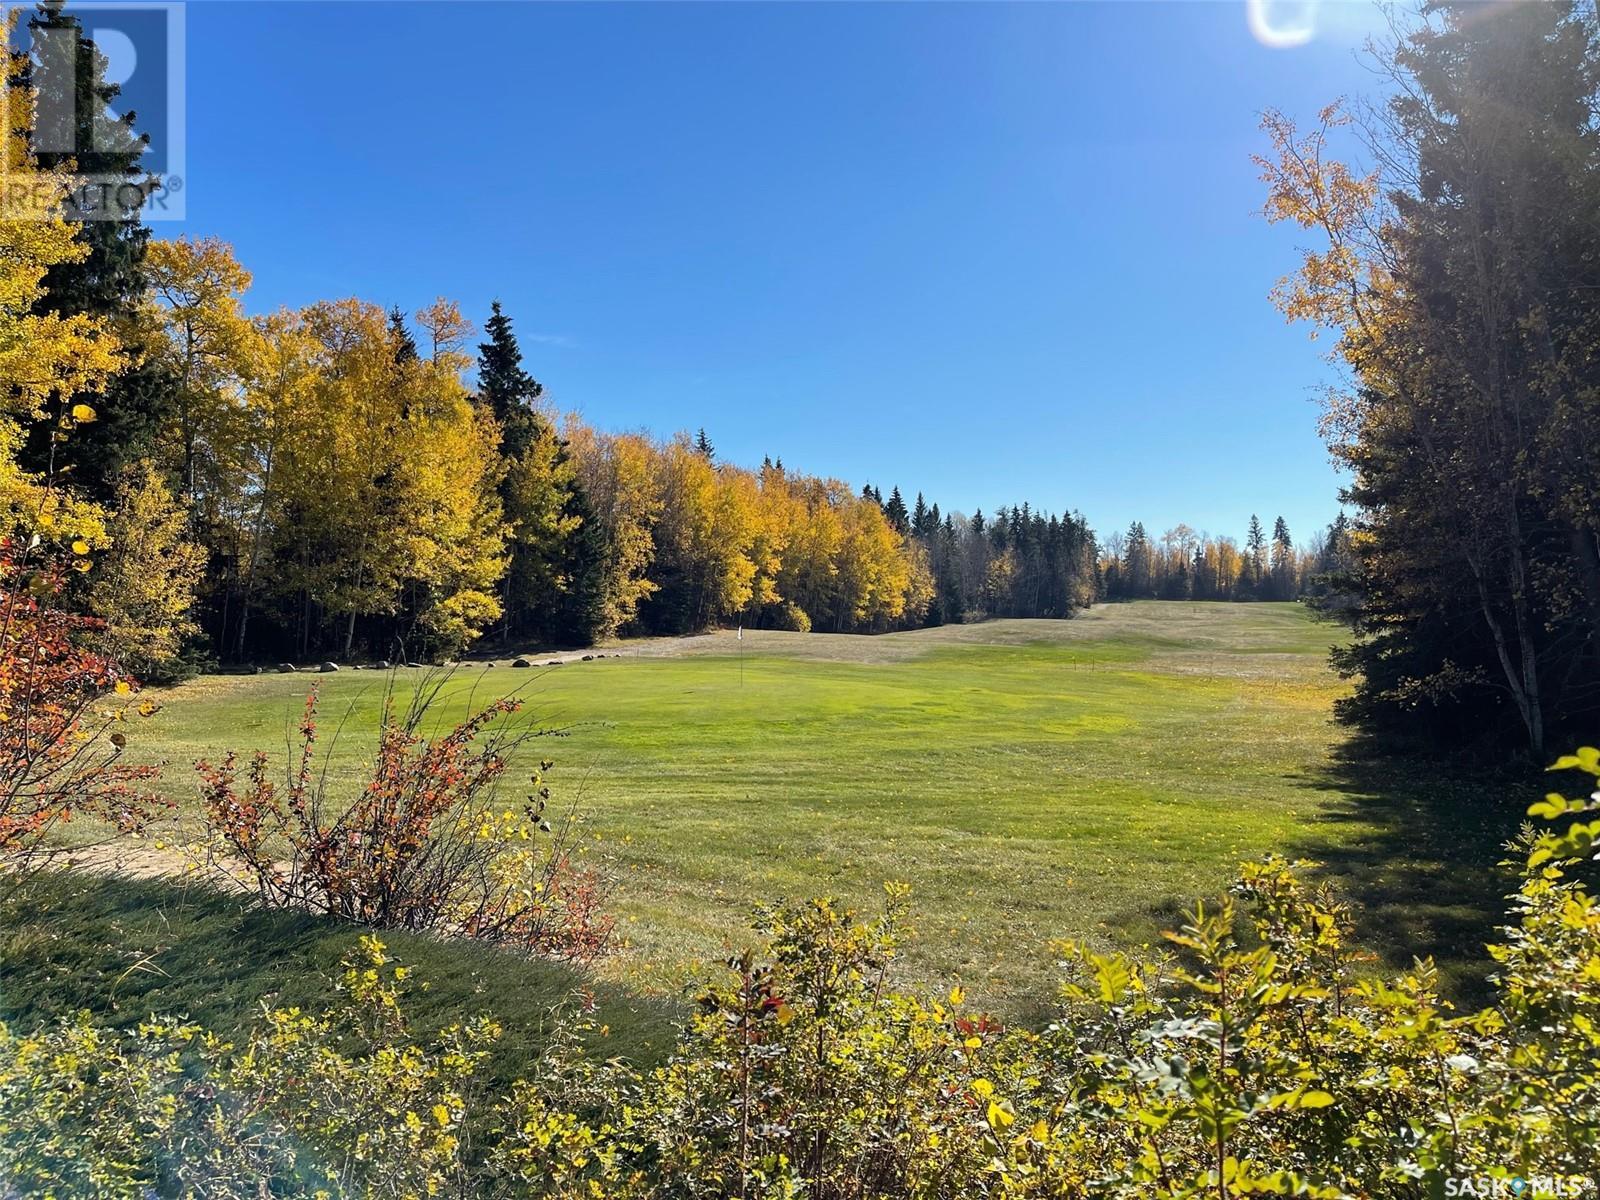 Chitek Lake Golf Course located in Chitek Lake, Saskatchewan